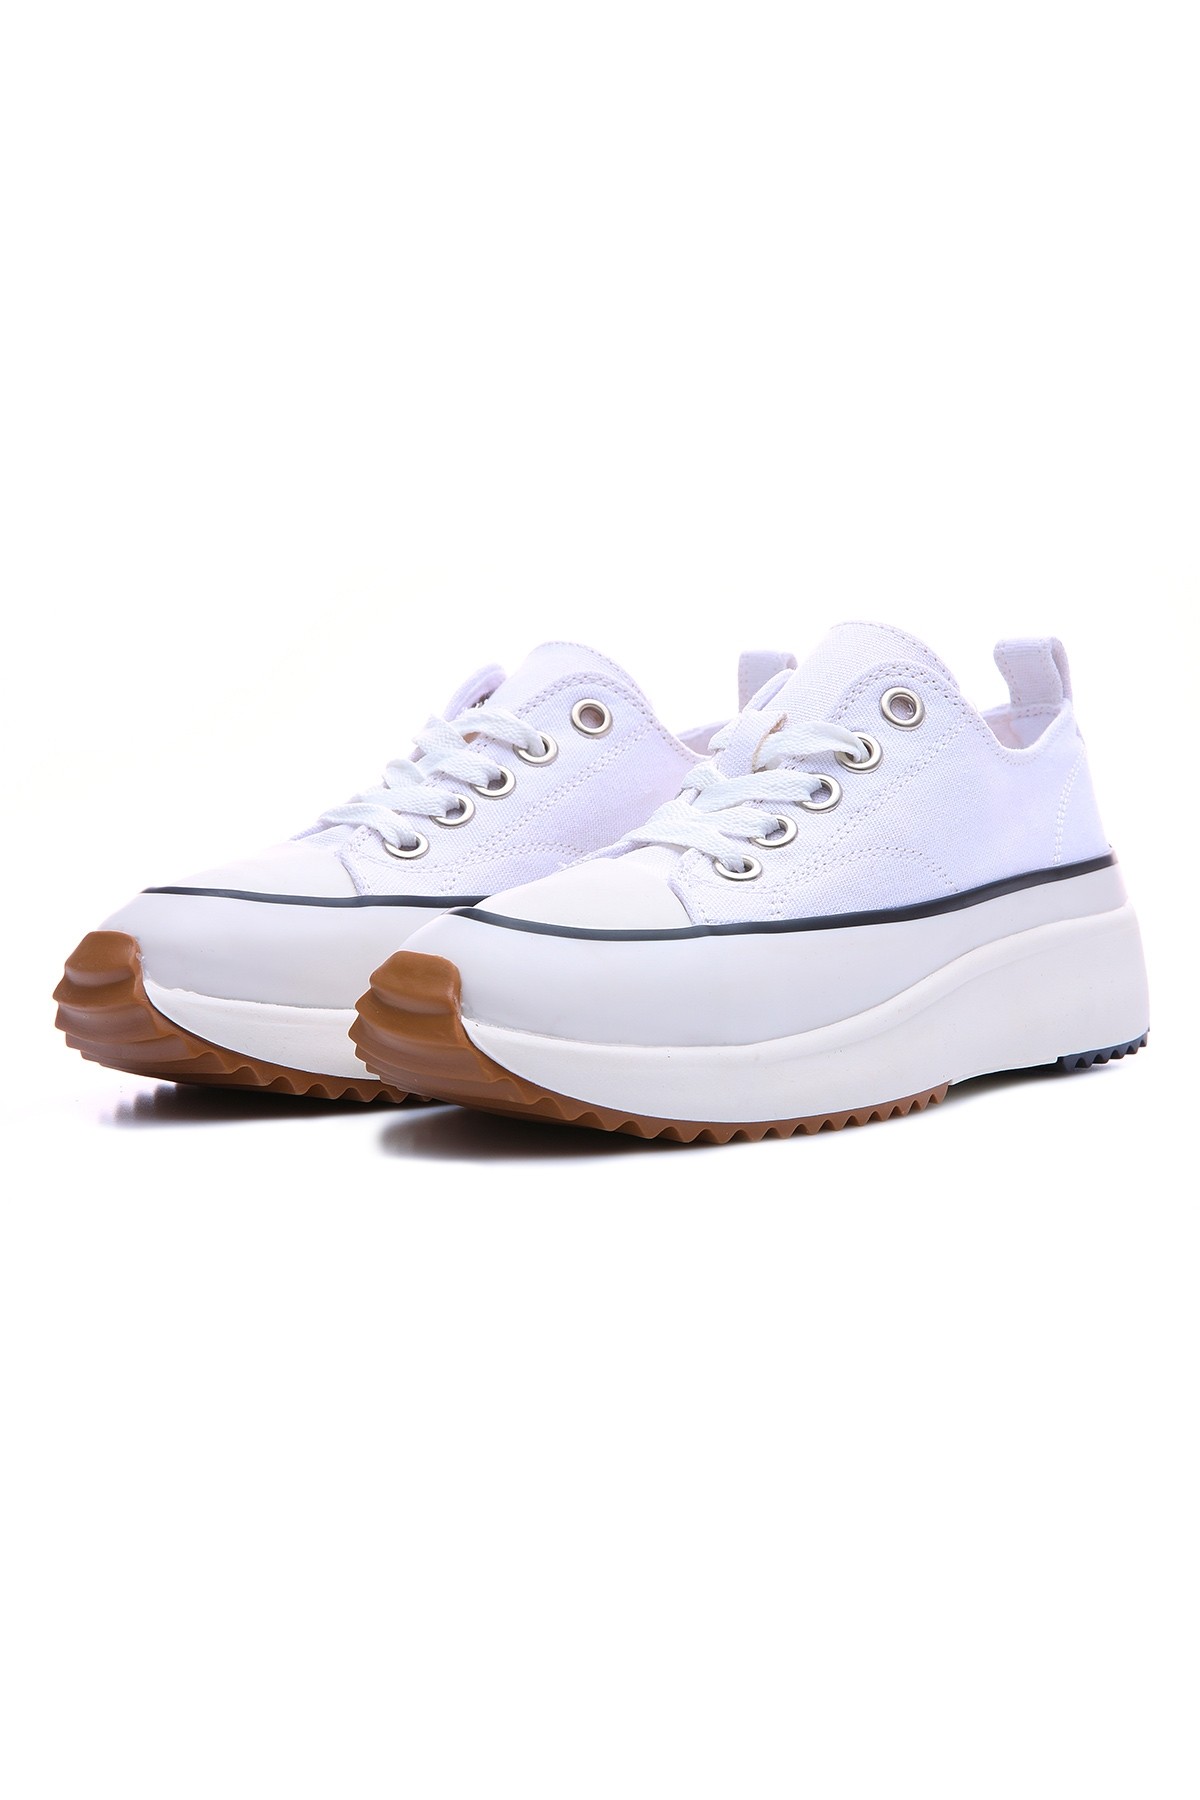 Beyaz Bağcıklı Yüksek Taban Günlük Kadın Spor Ayakkabı - 89070